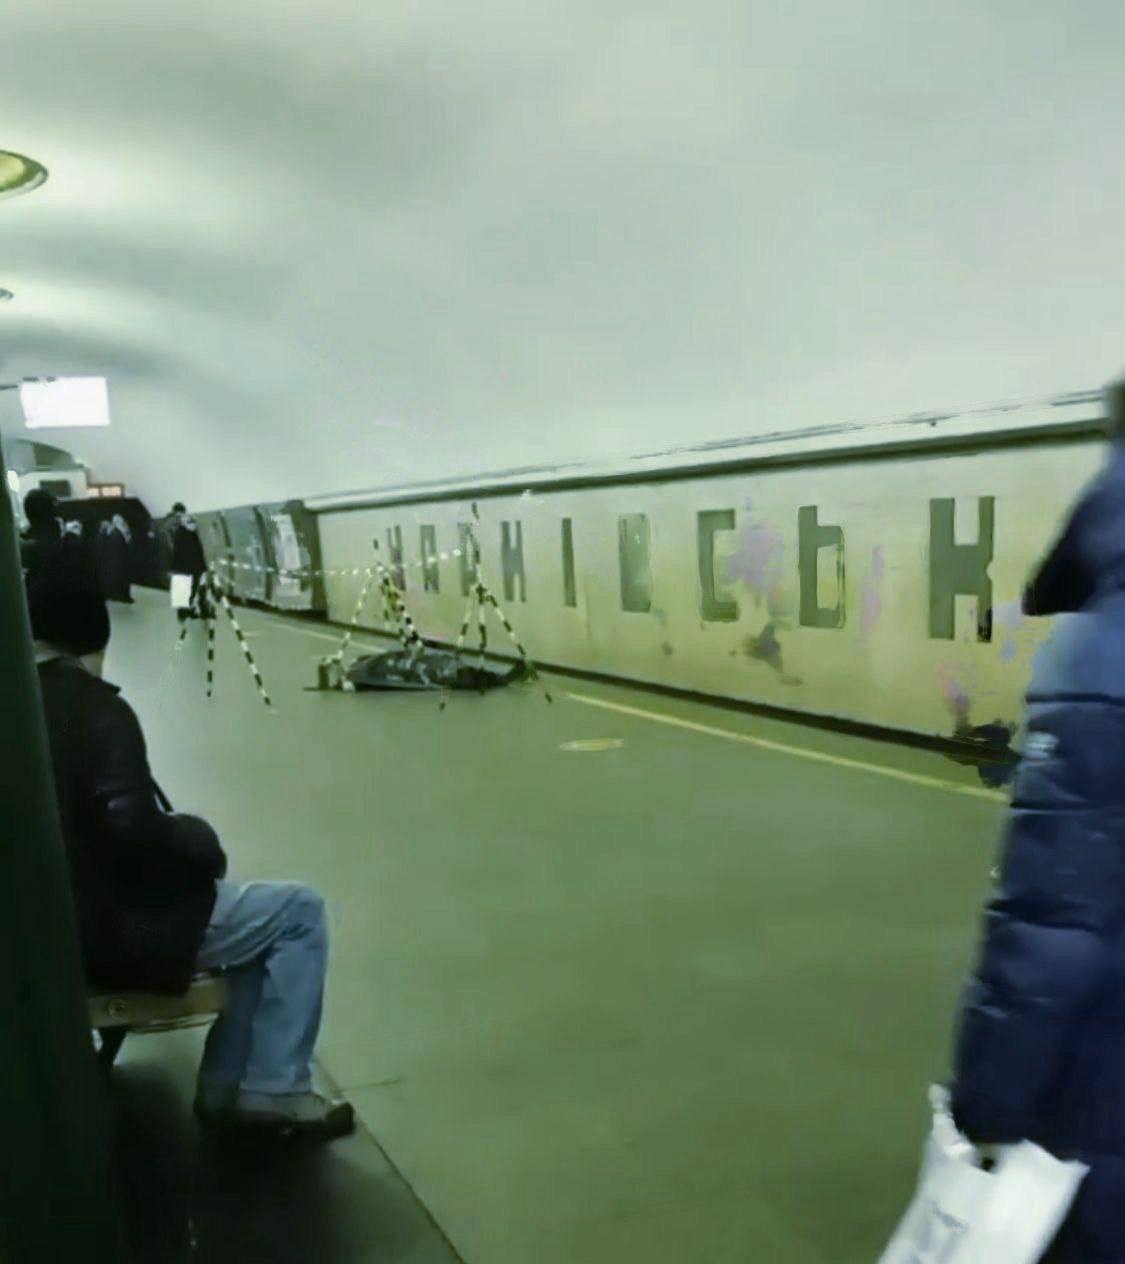 У Києві на станції метро помер пасажир